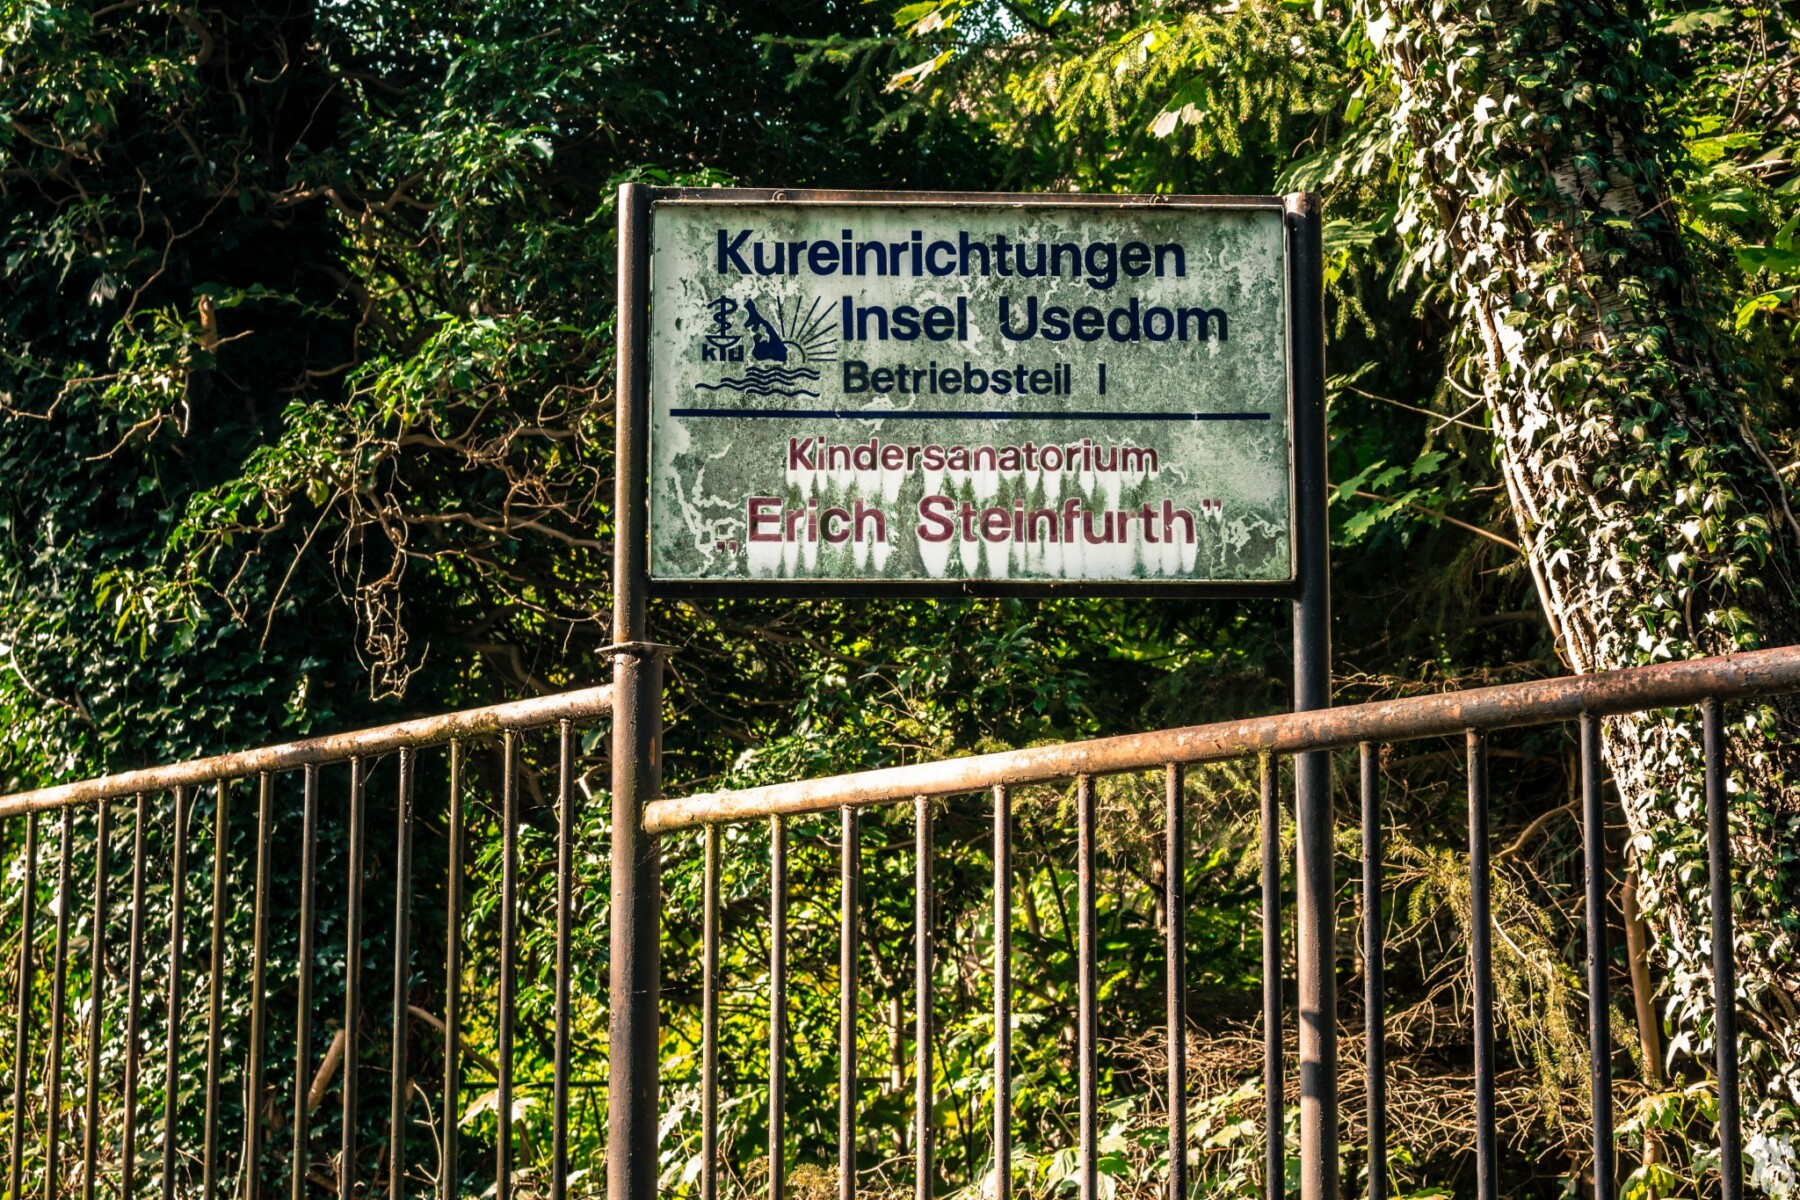 Sanatorium abandonné en Allemagne